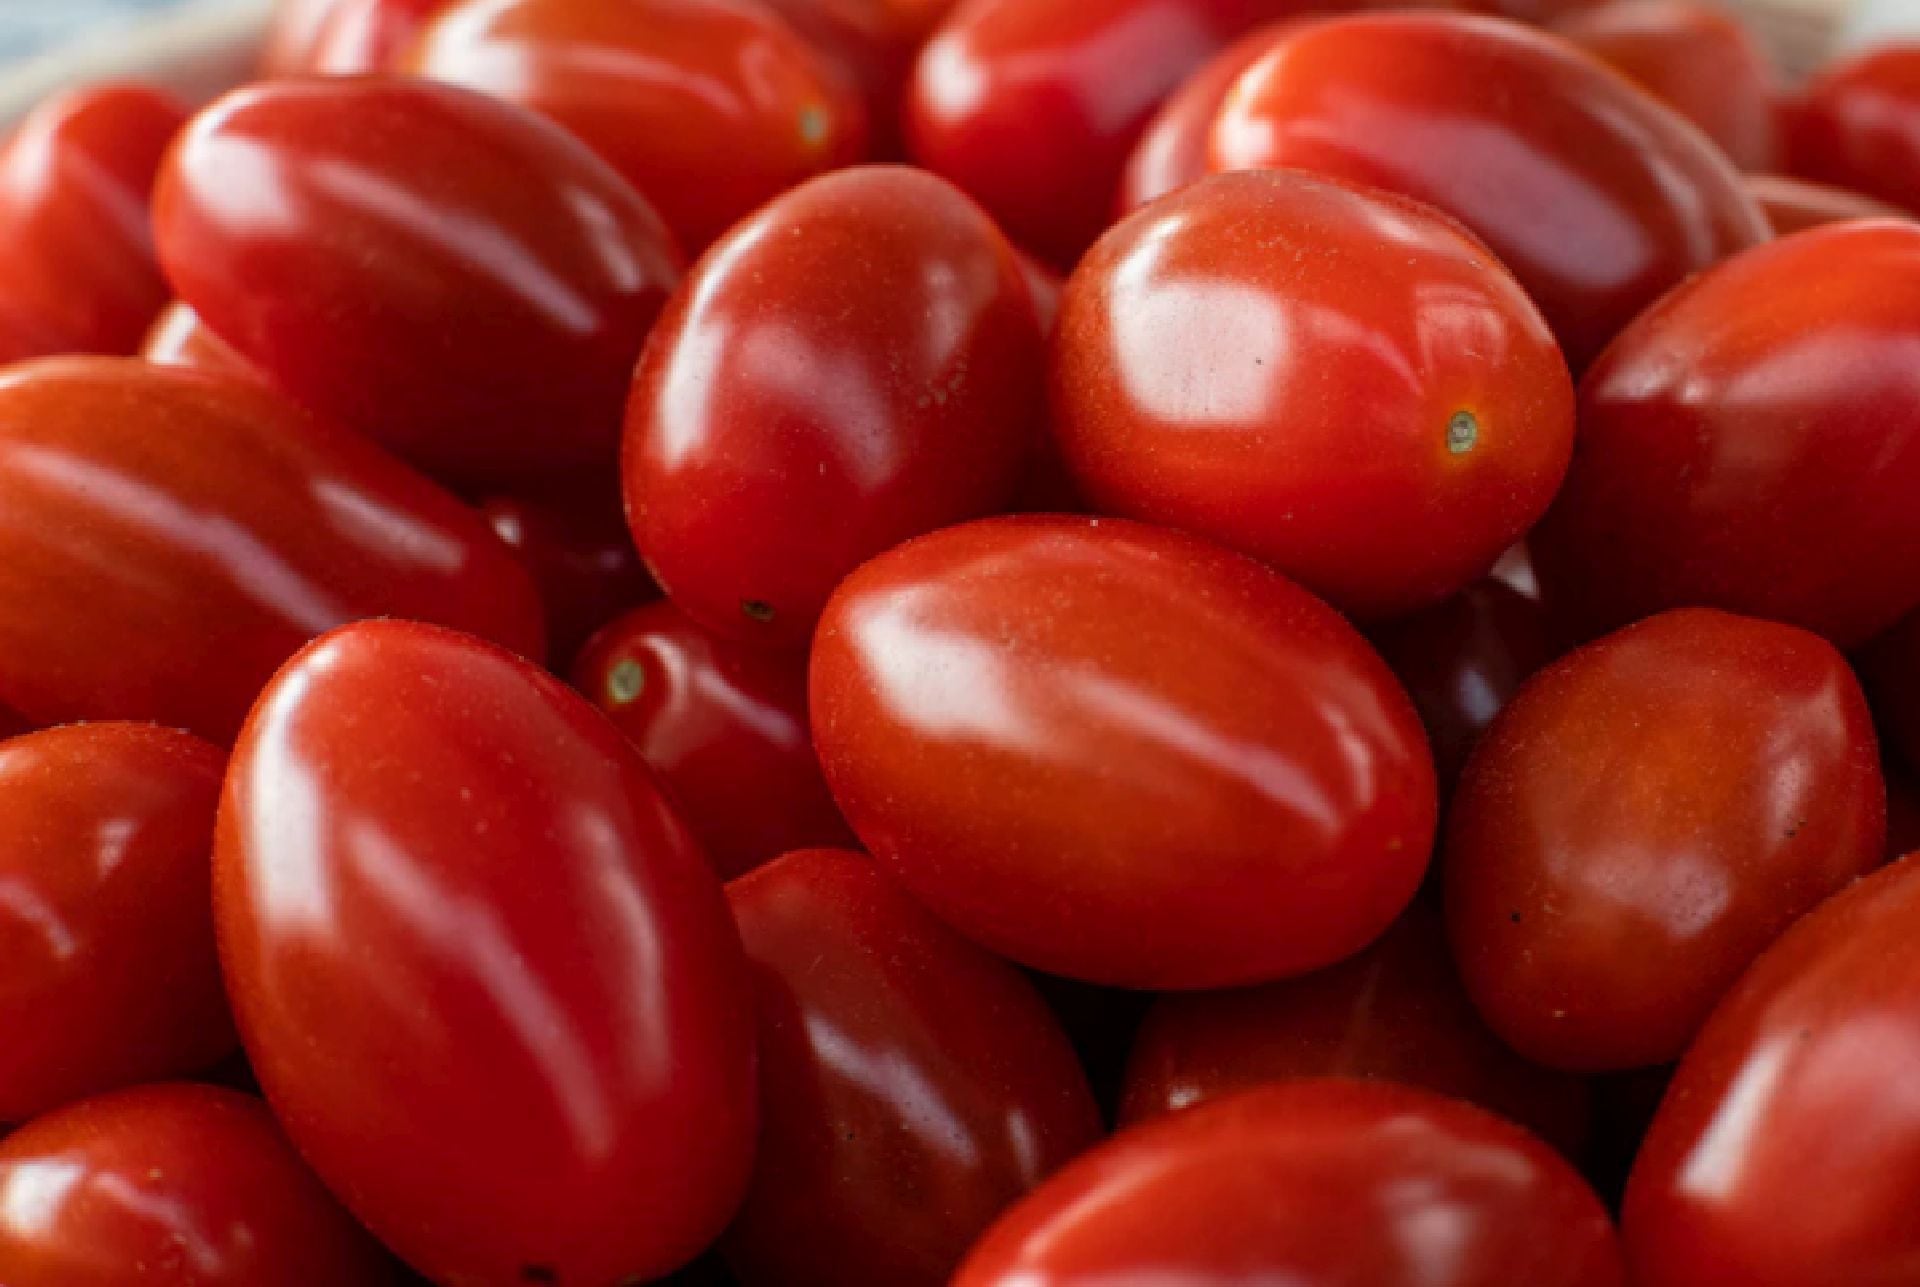 El tomate es considerado una fruta según la definición de la Real Academia Española (RAE) (Freepik)